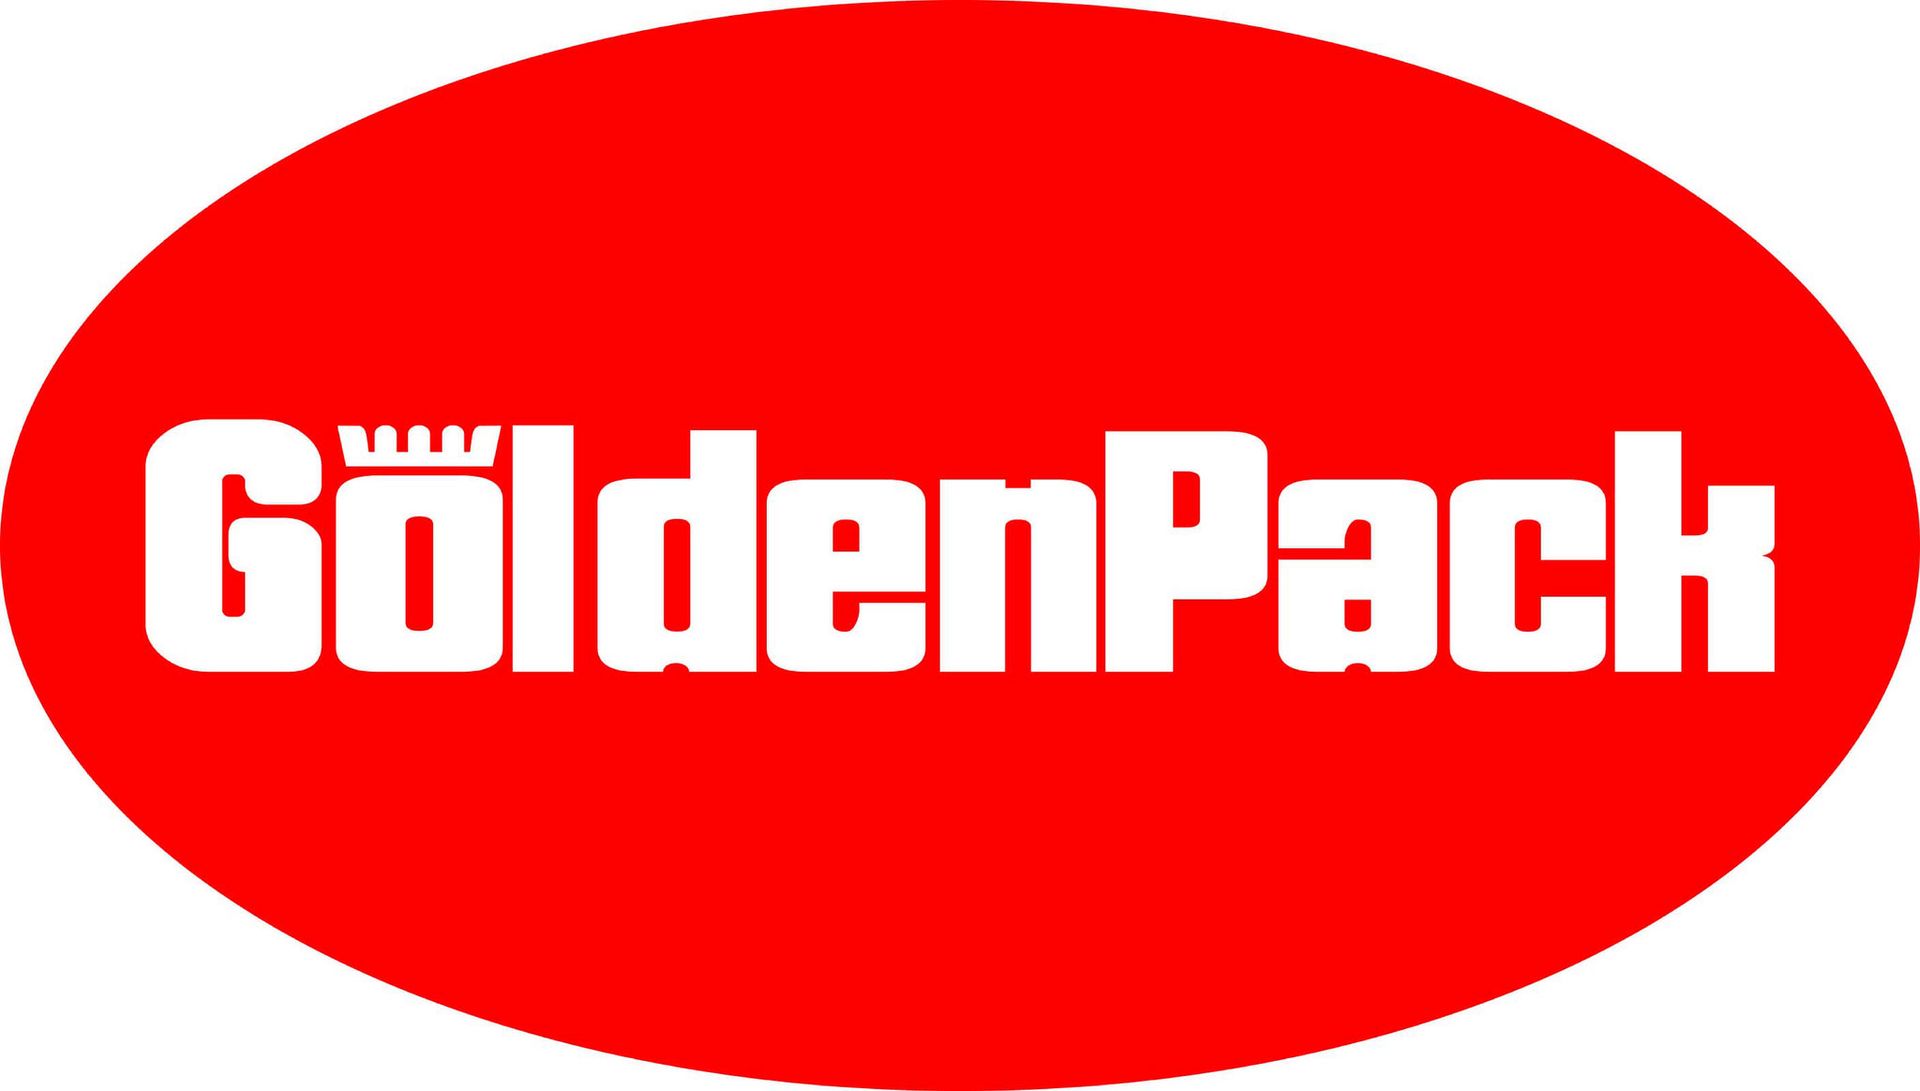 Golden pack